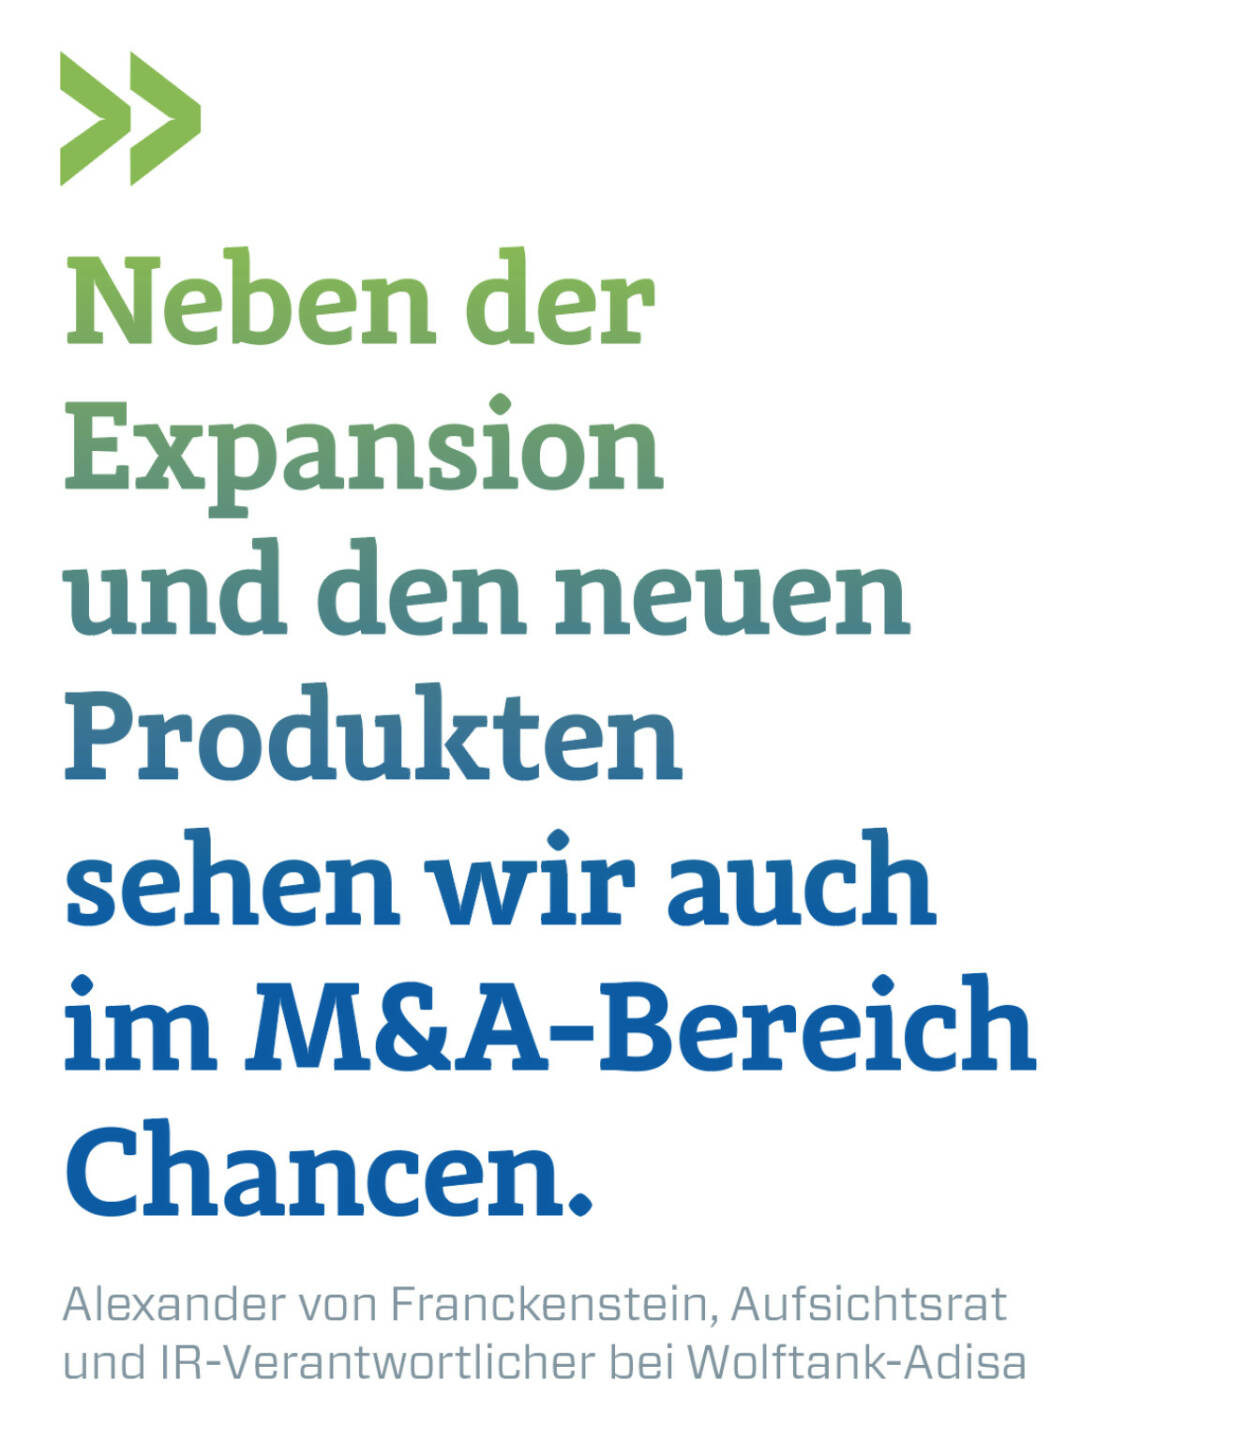 Neben der Expansion und den neuen Produkten sehen wir auch im M&A-Bereich Chancen.
Alexander von Franckenstein, Aufsichtsrat und IR-Verantwortlicher bei Wolftank-Adisa